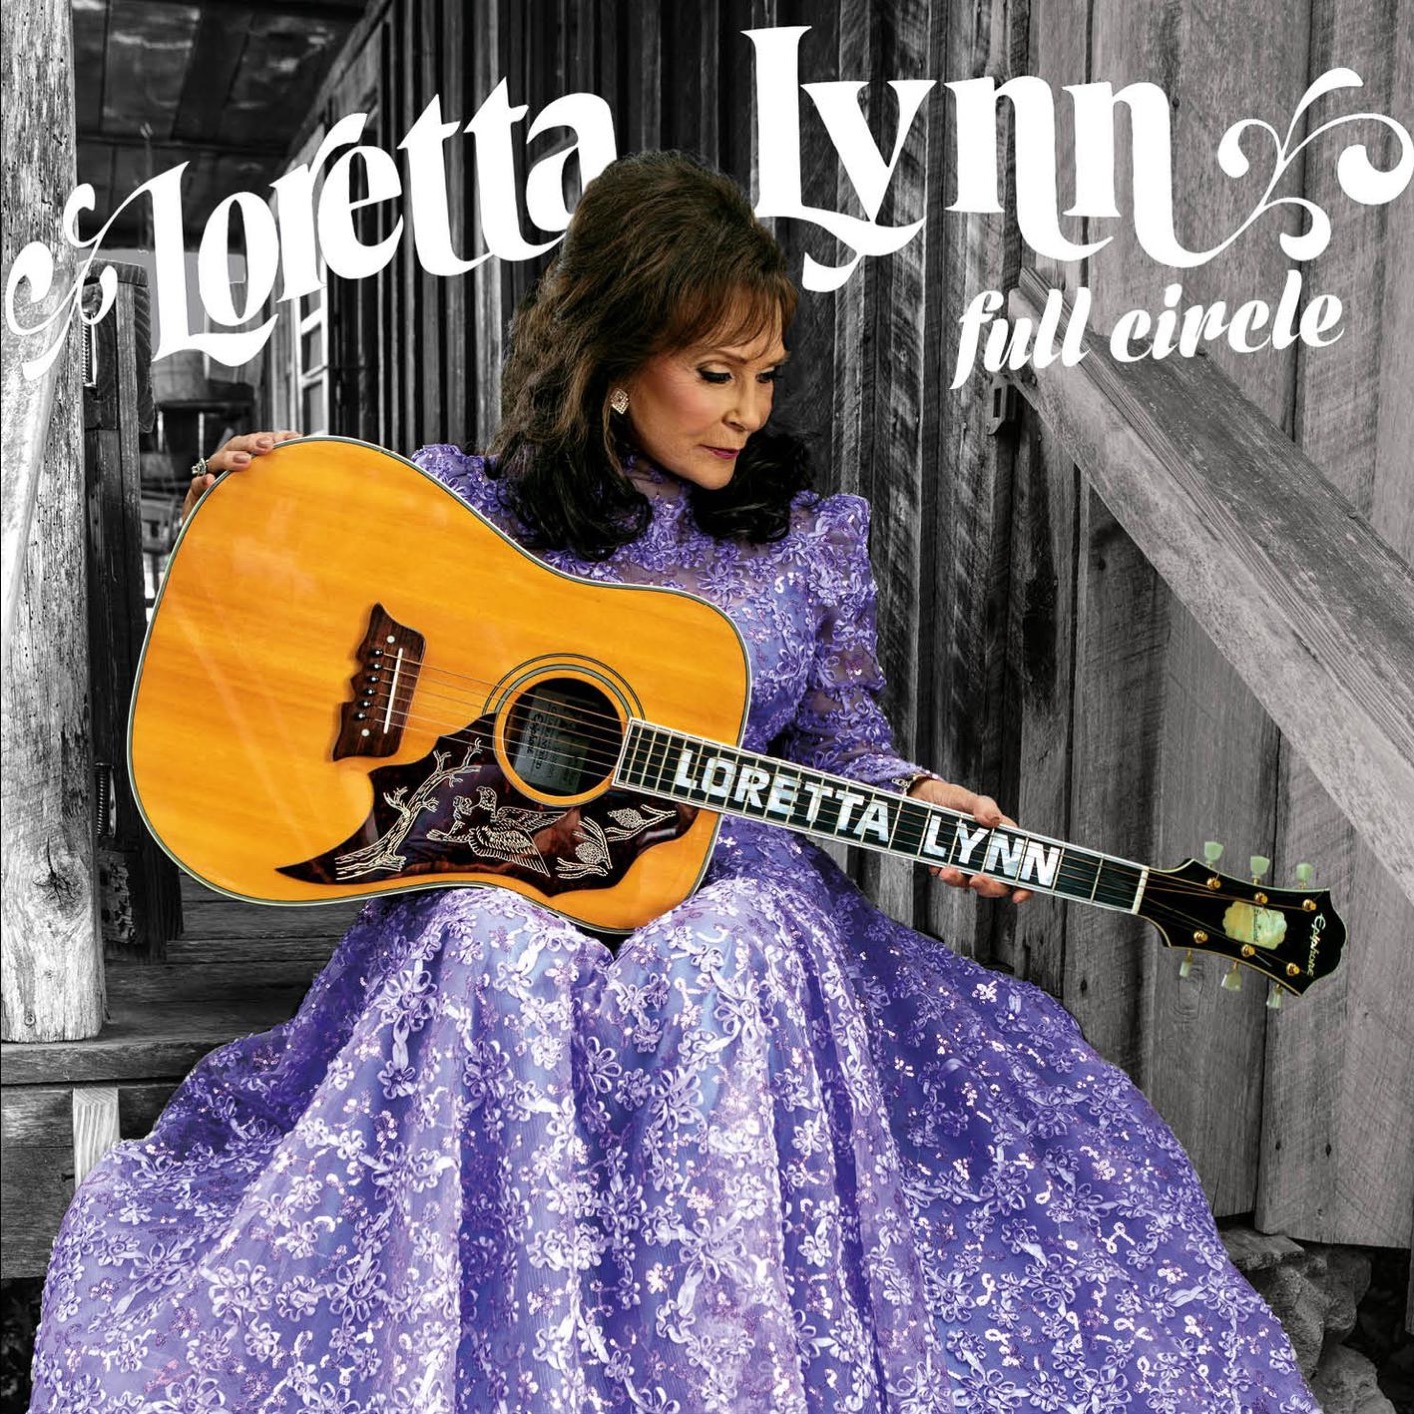 Loretta Lynn - Full Circle (2016) [FLAC 24bit/96kHz]